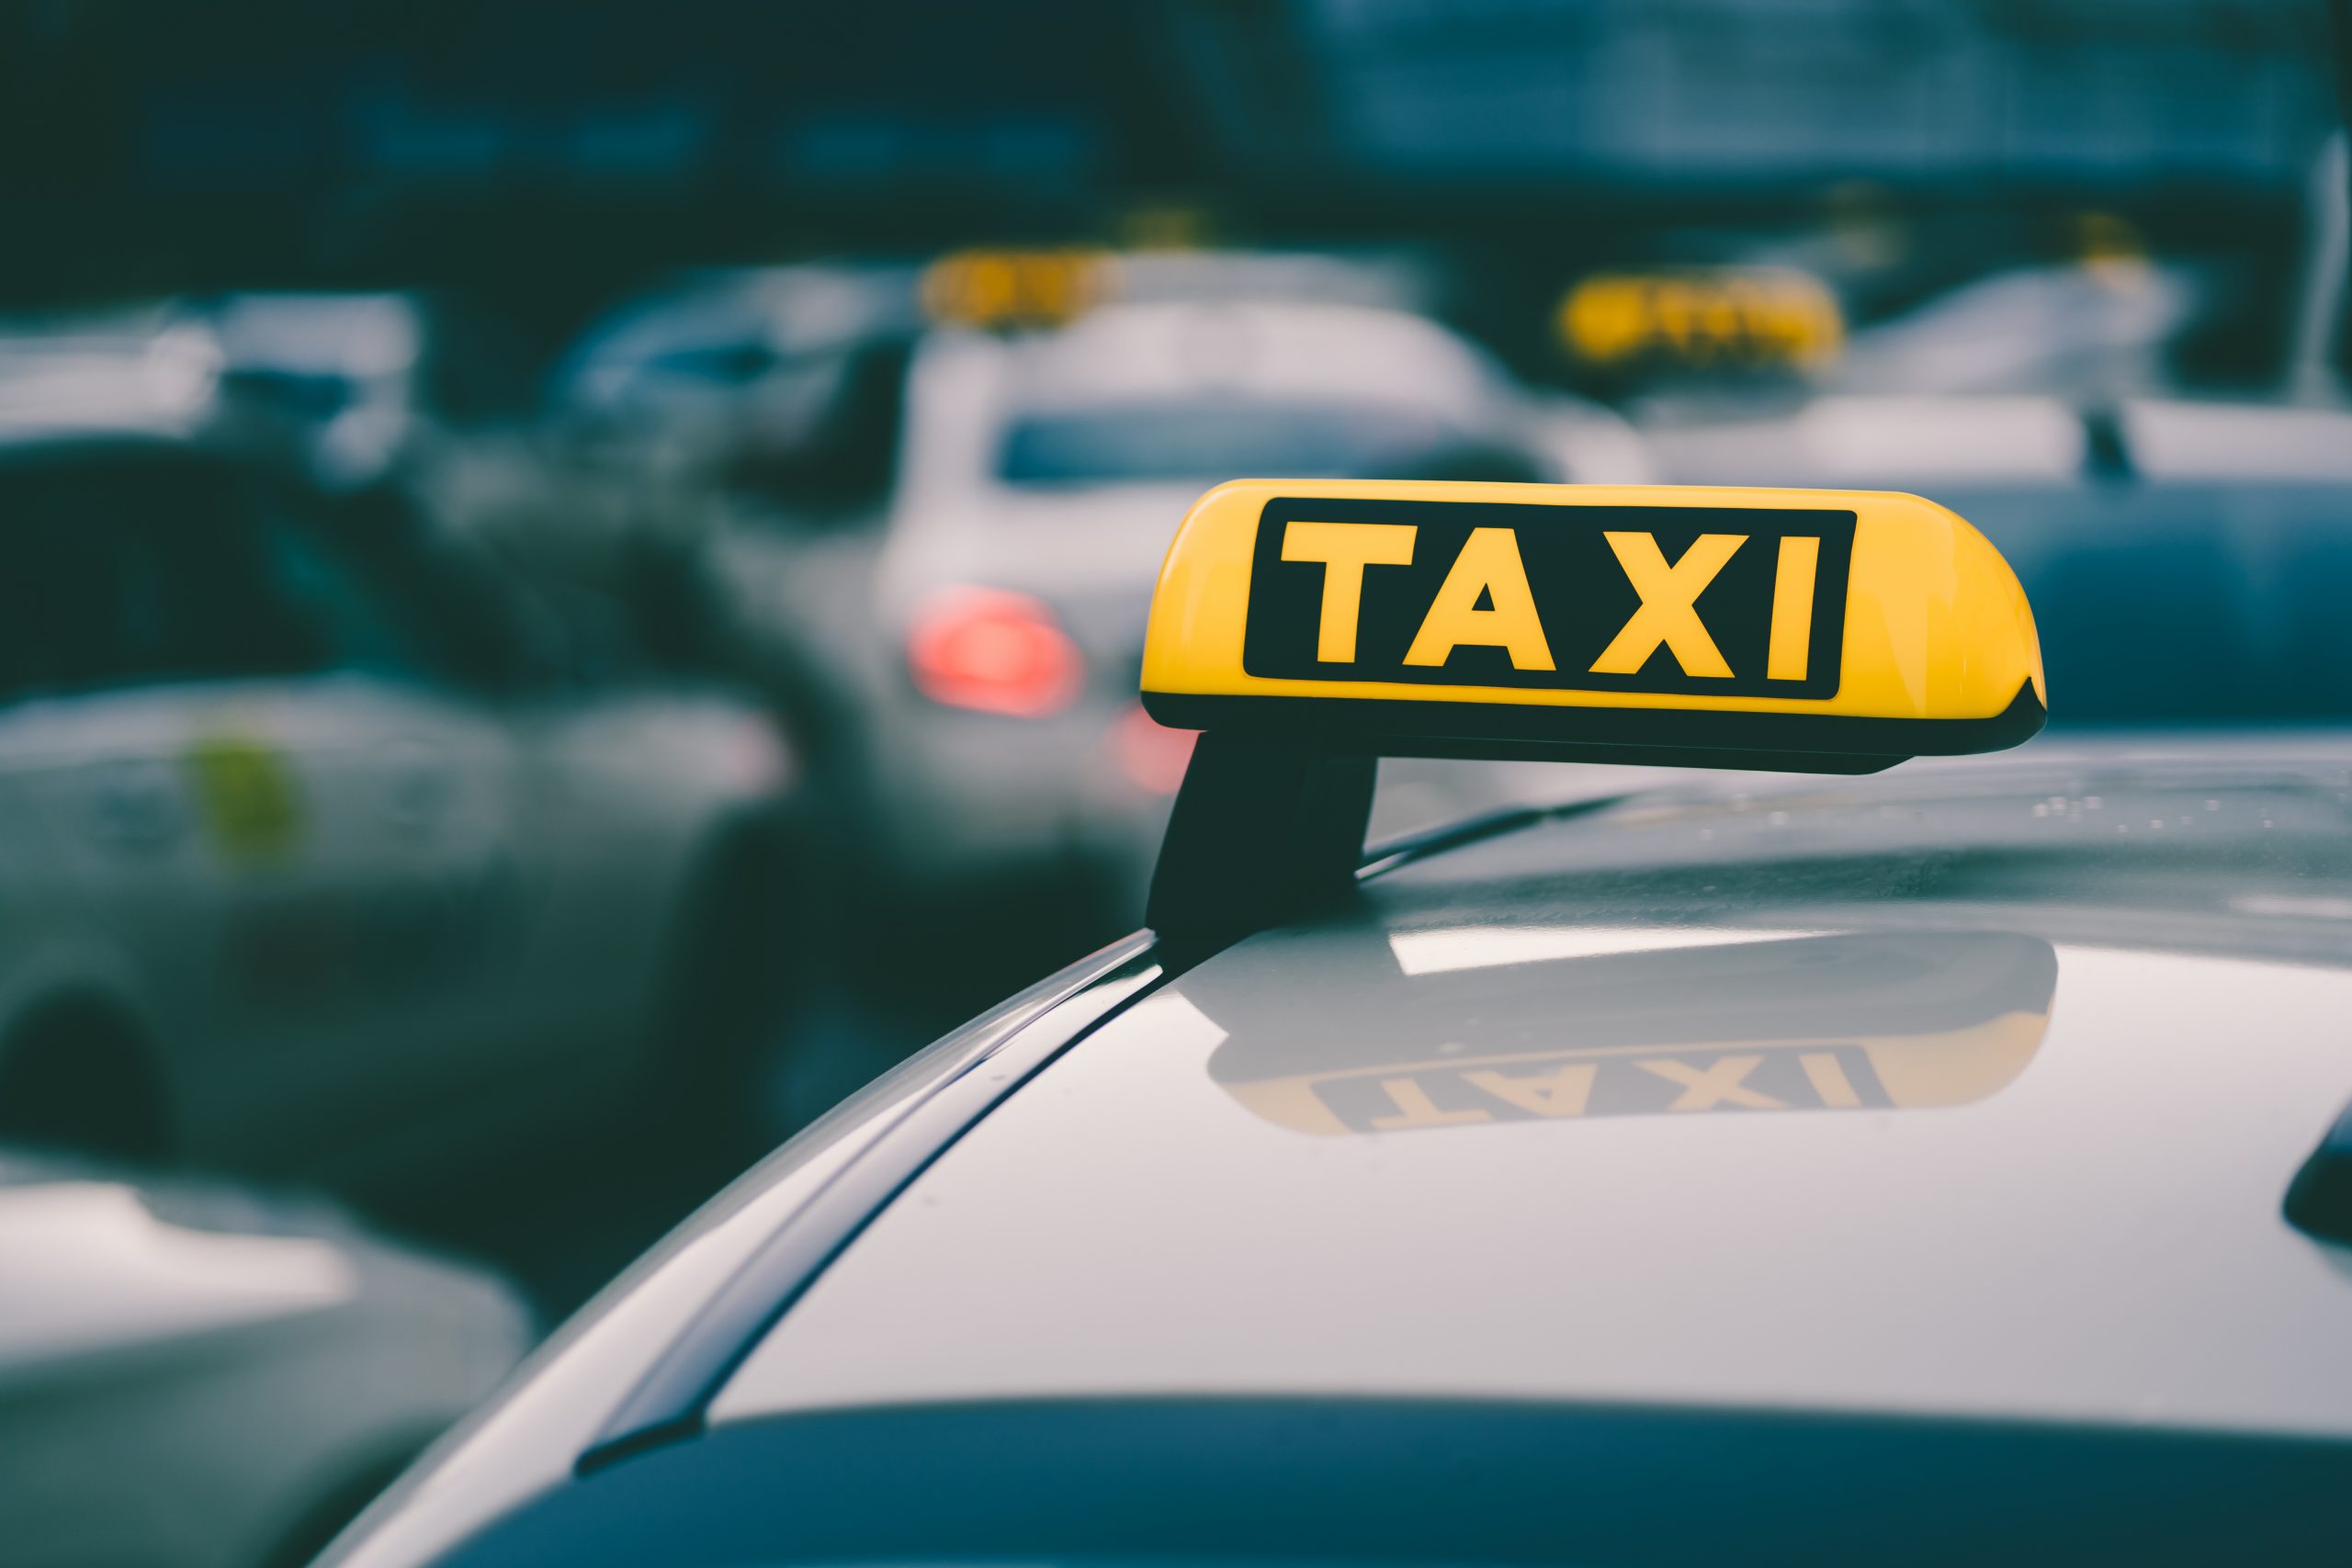 Concurs públic per a la concessió d’una llicència de taxi urbà de Castellvell del Camp